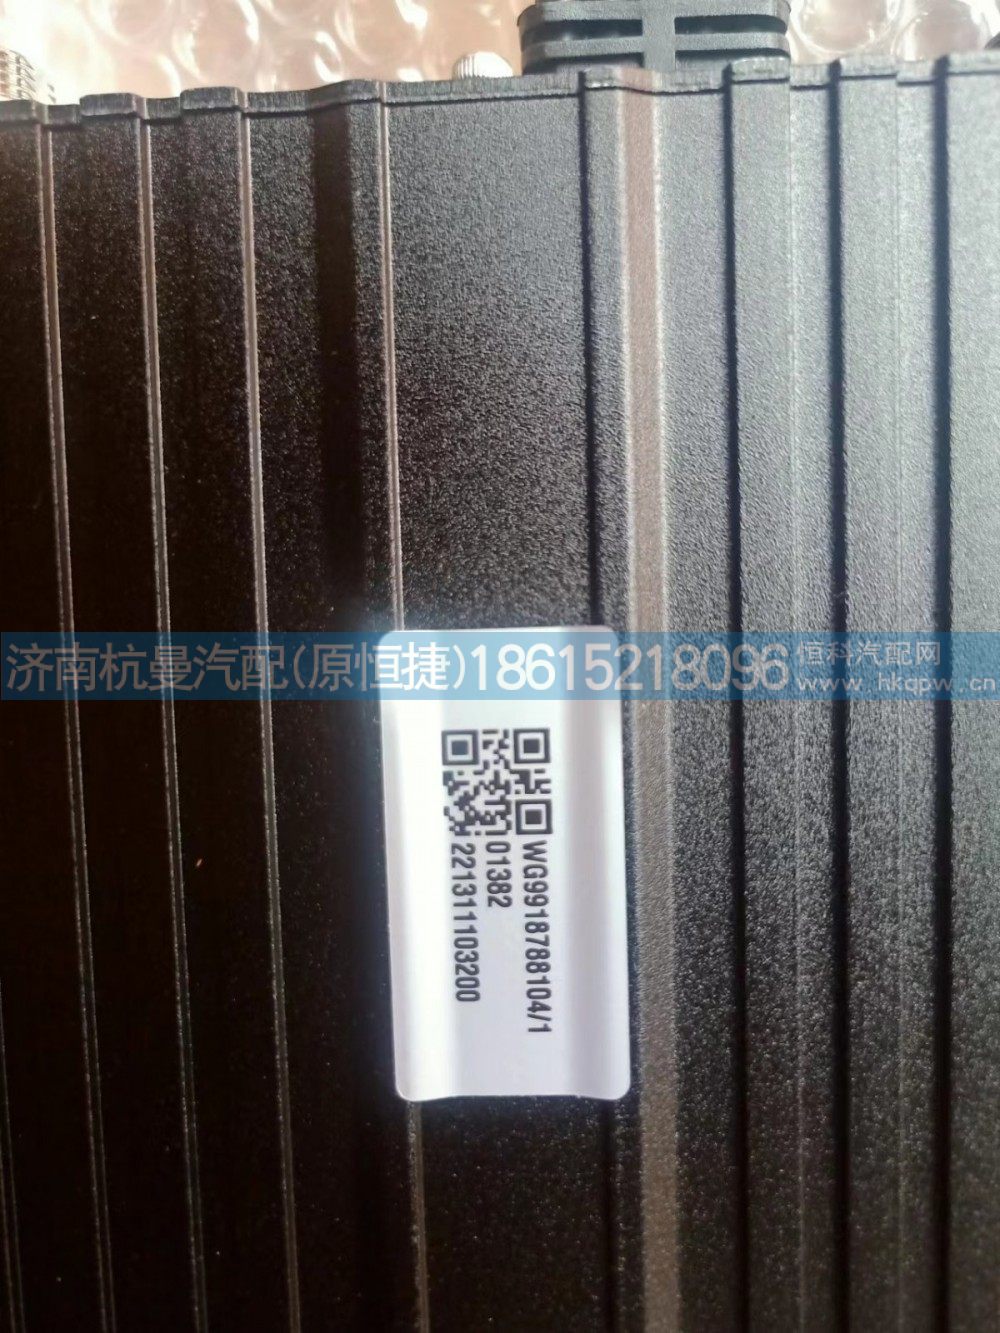 WG9918788104,四方位影像主机,济南杭曼汽车配件有限公司